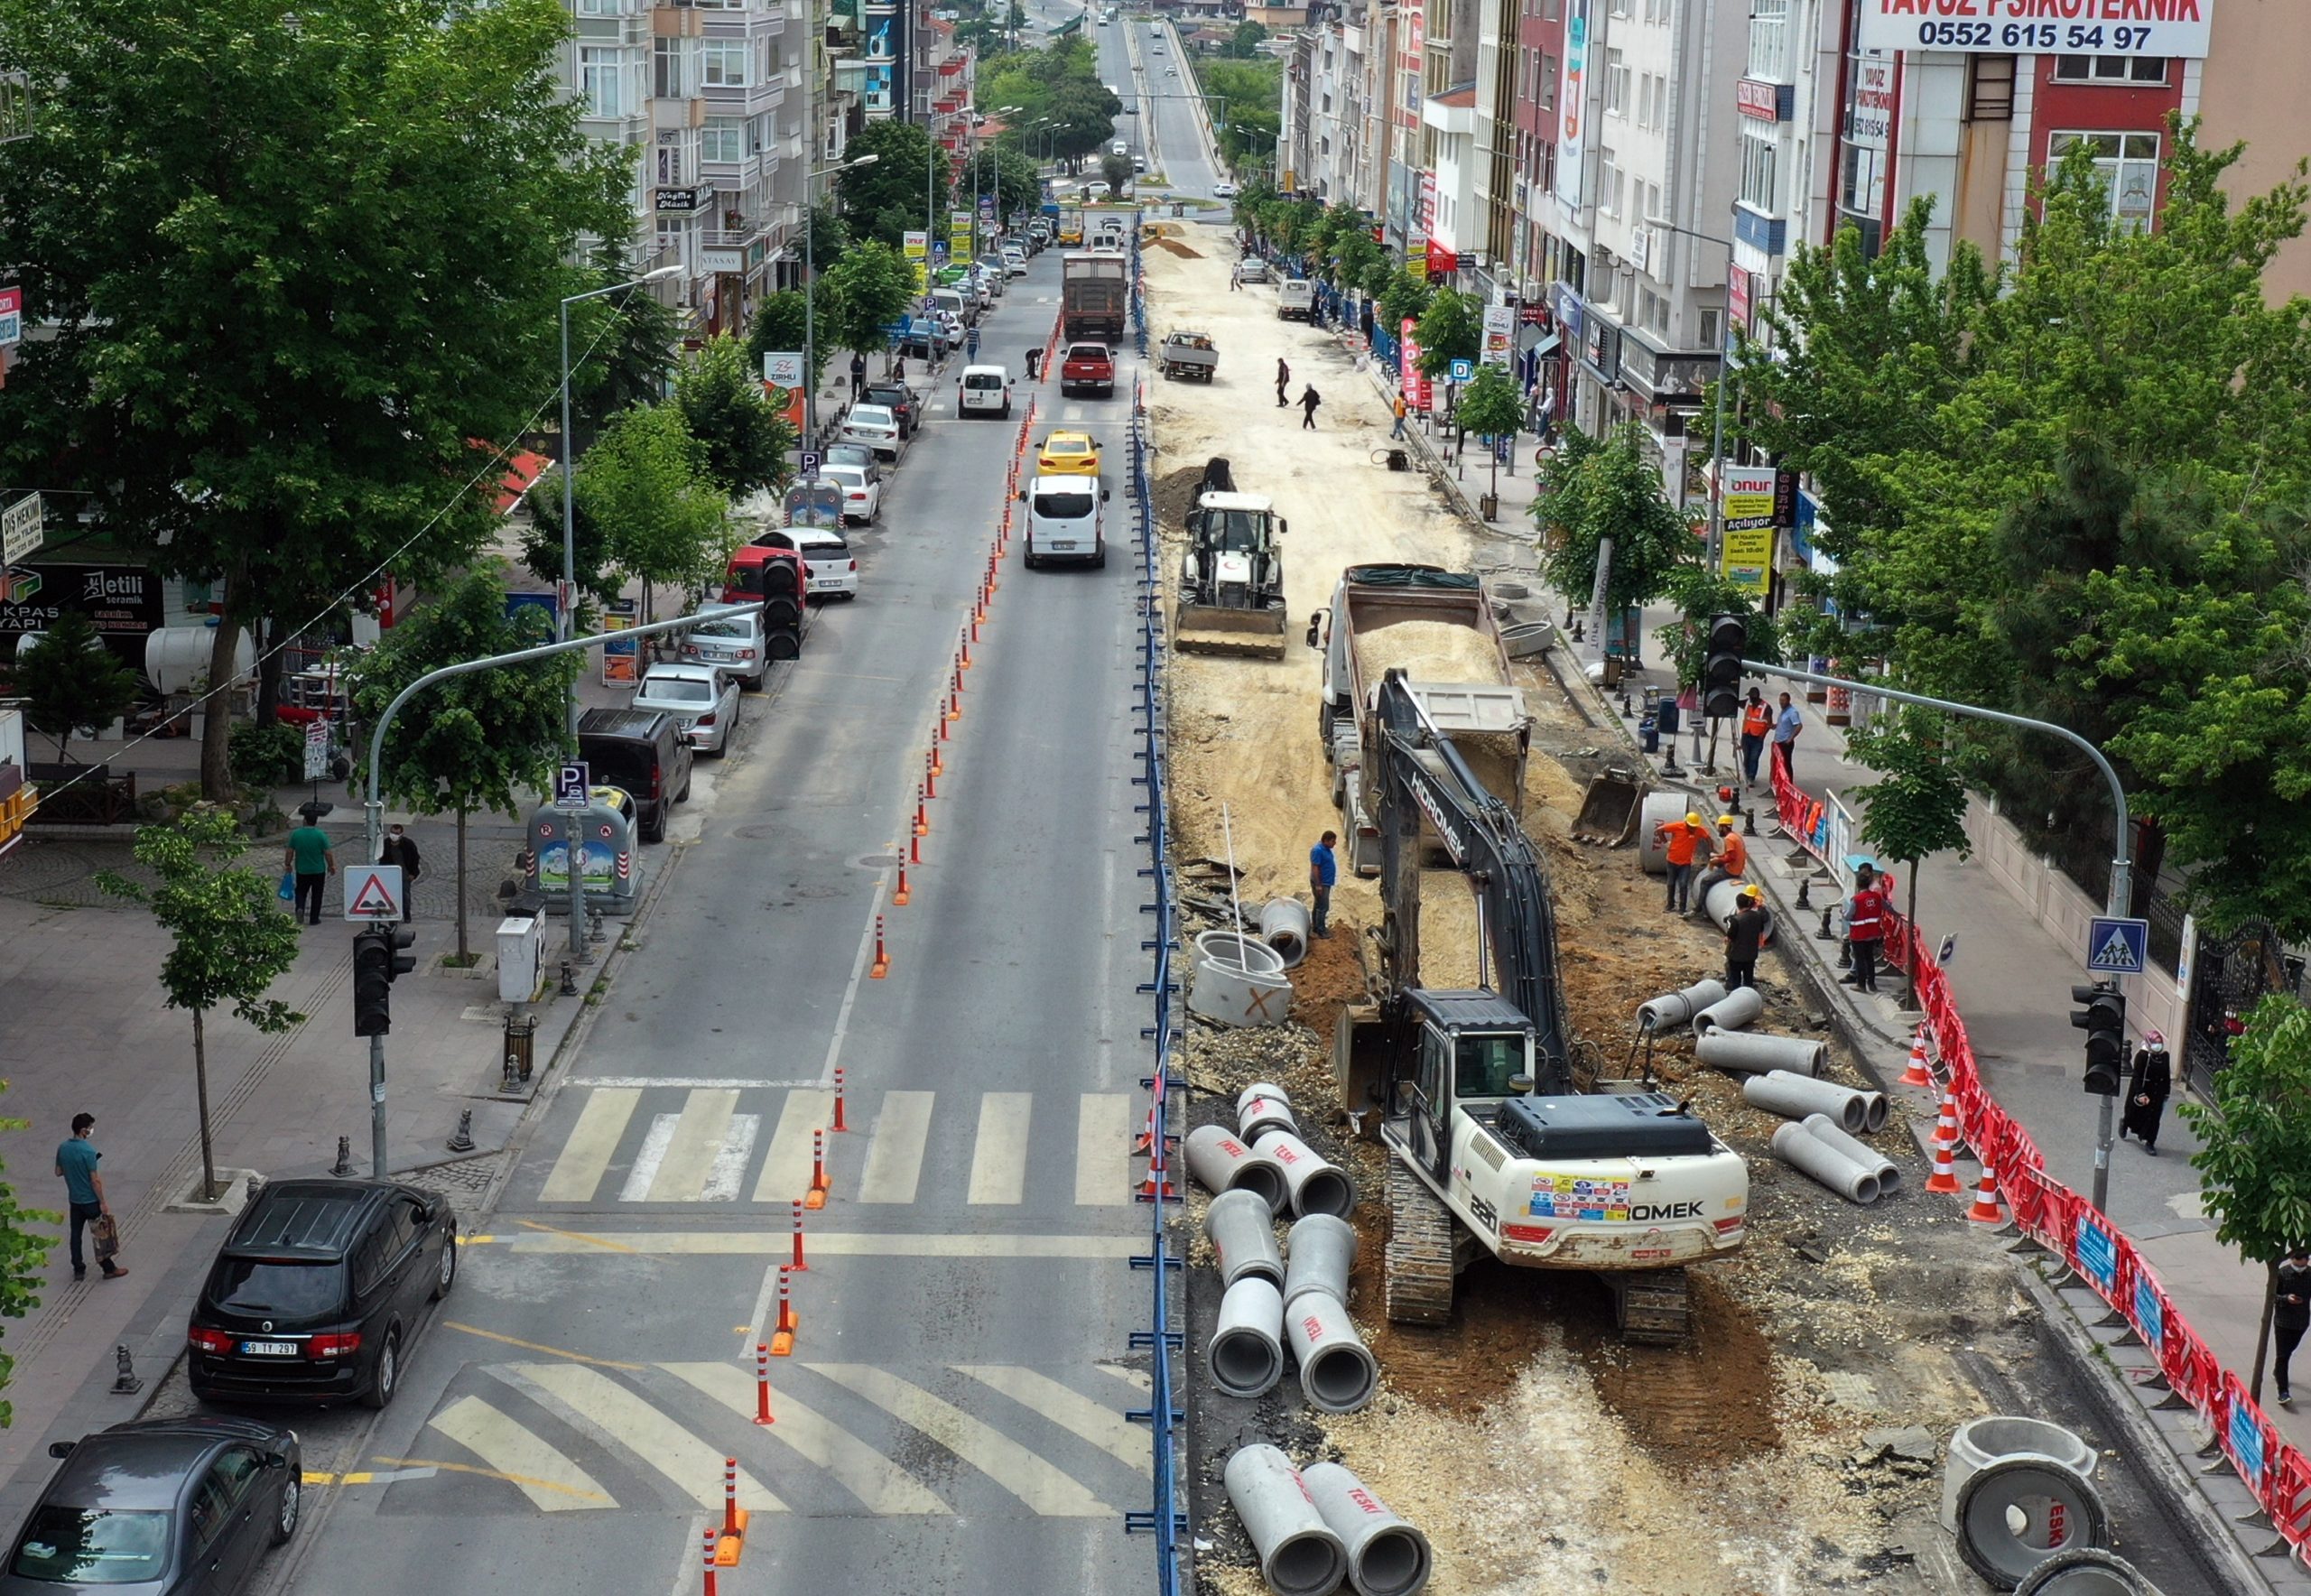  Tekirdağ Büyükşehir Belediyesi ve Çerkezköy Belediyesi Kentsel Tasarım Çalışmaları Devam Ediyor